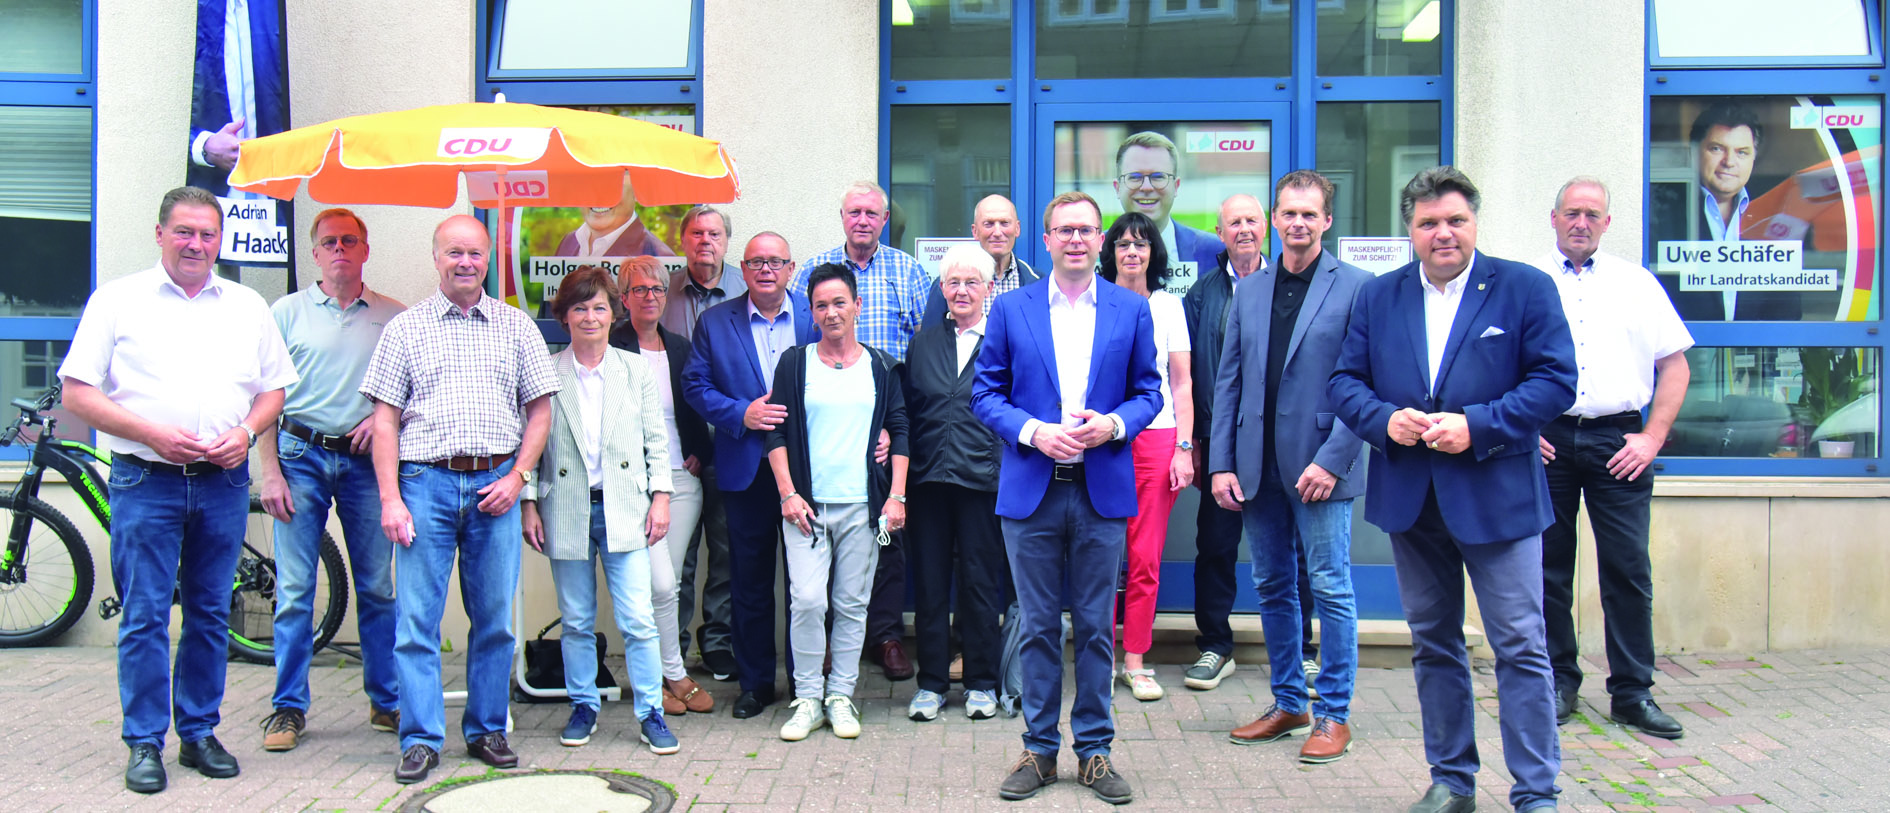 CDU Bürgerbüro erfolgreich eröffnet